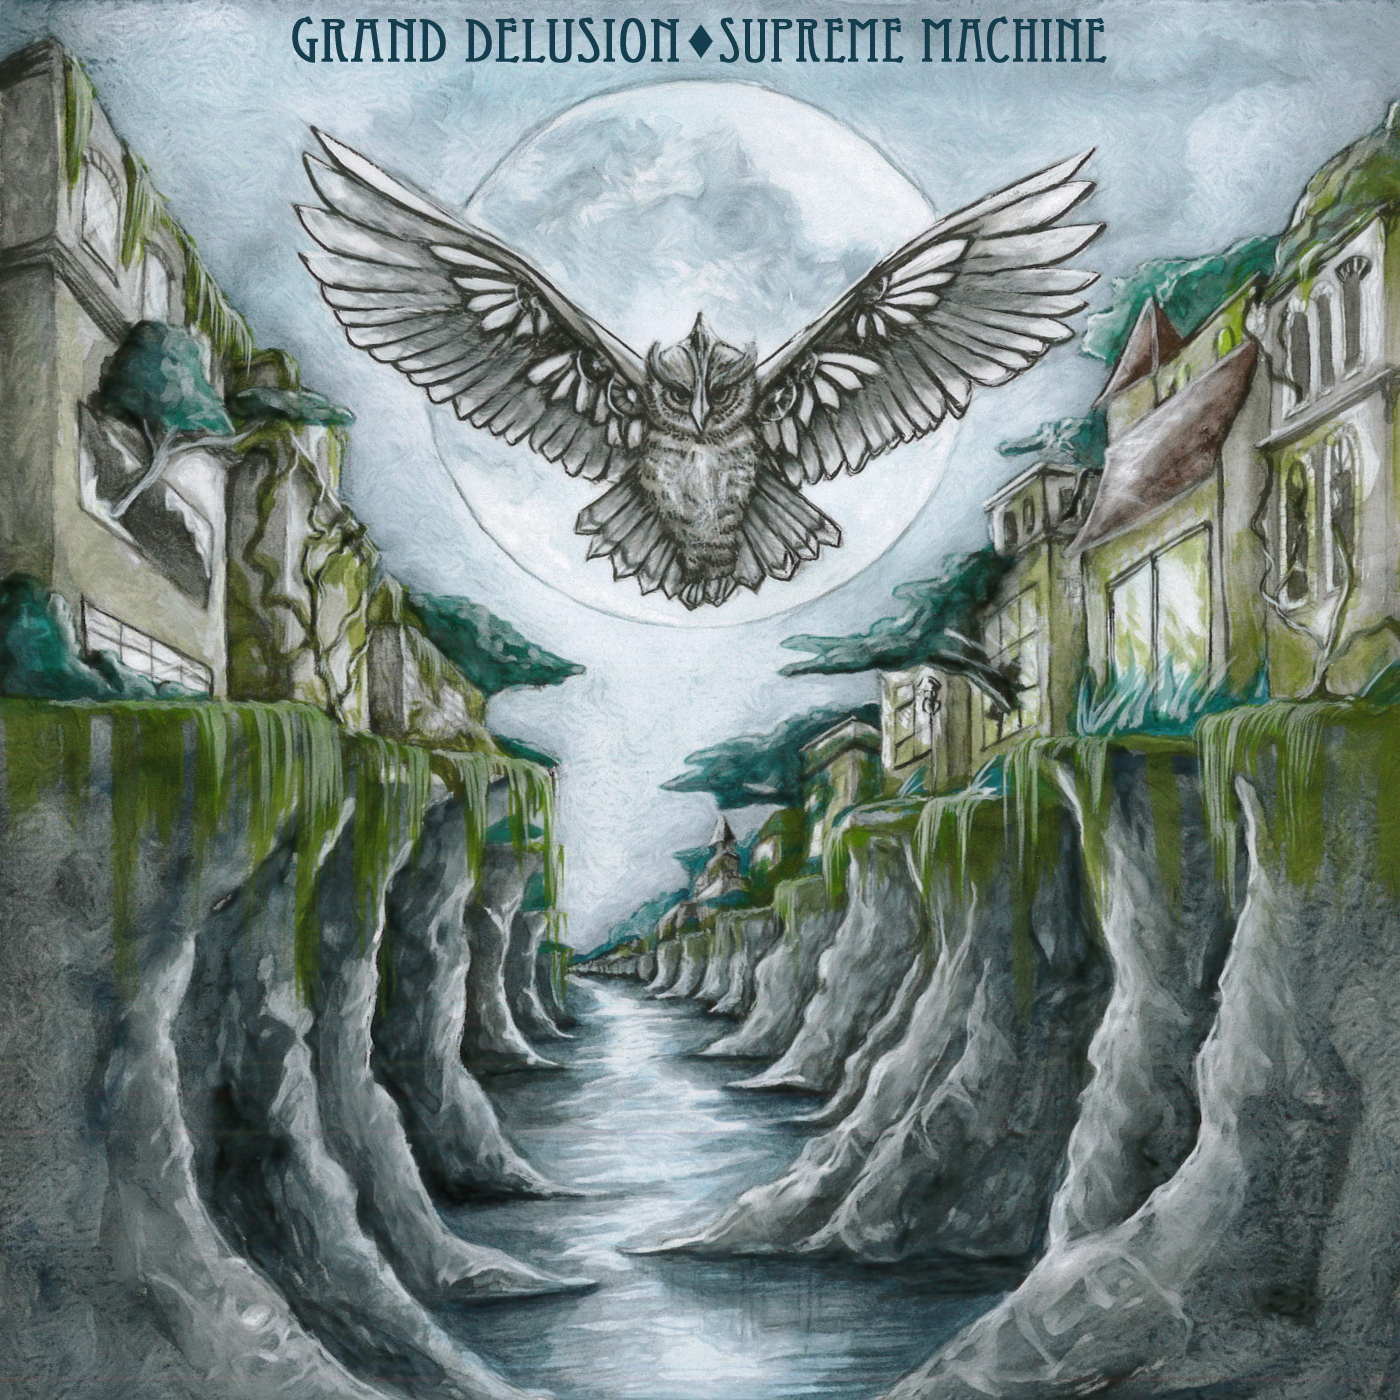 Grand Delusion – Supreme Machine